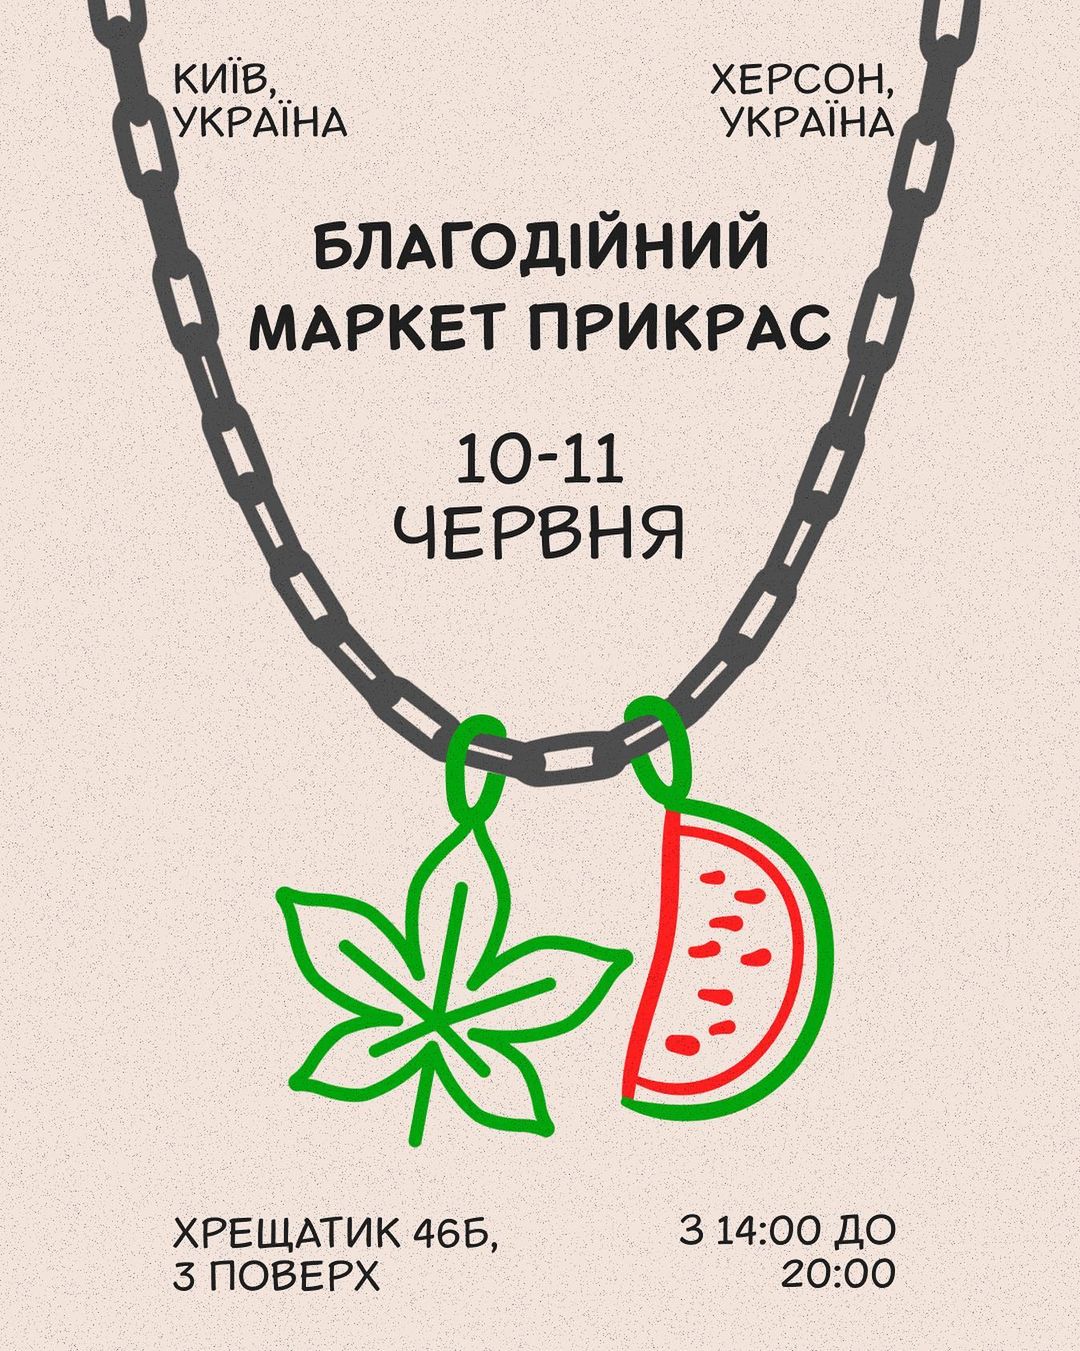 Благодійний маркет прикрас 10-11 червня у Києві-Фото 1